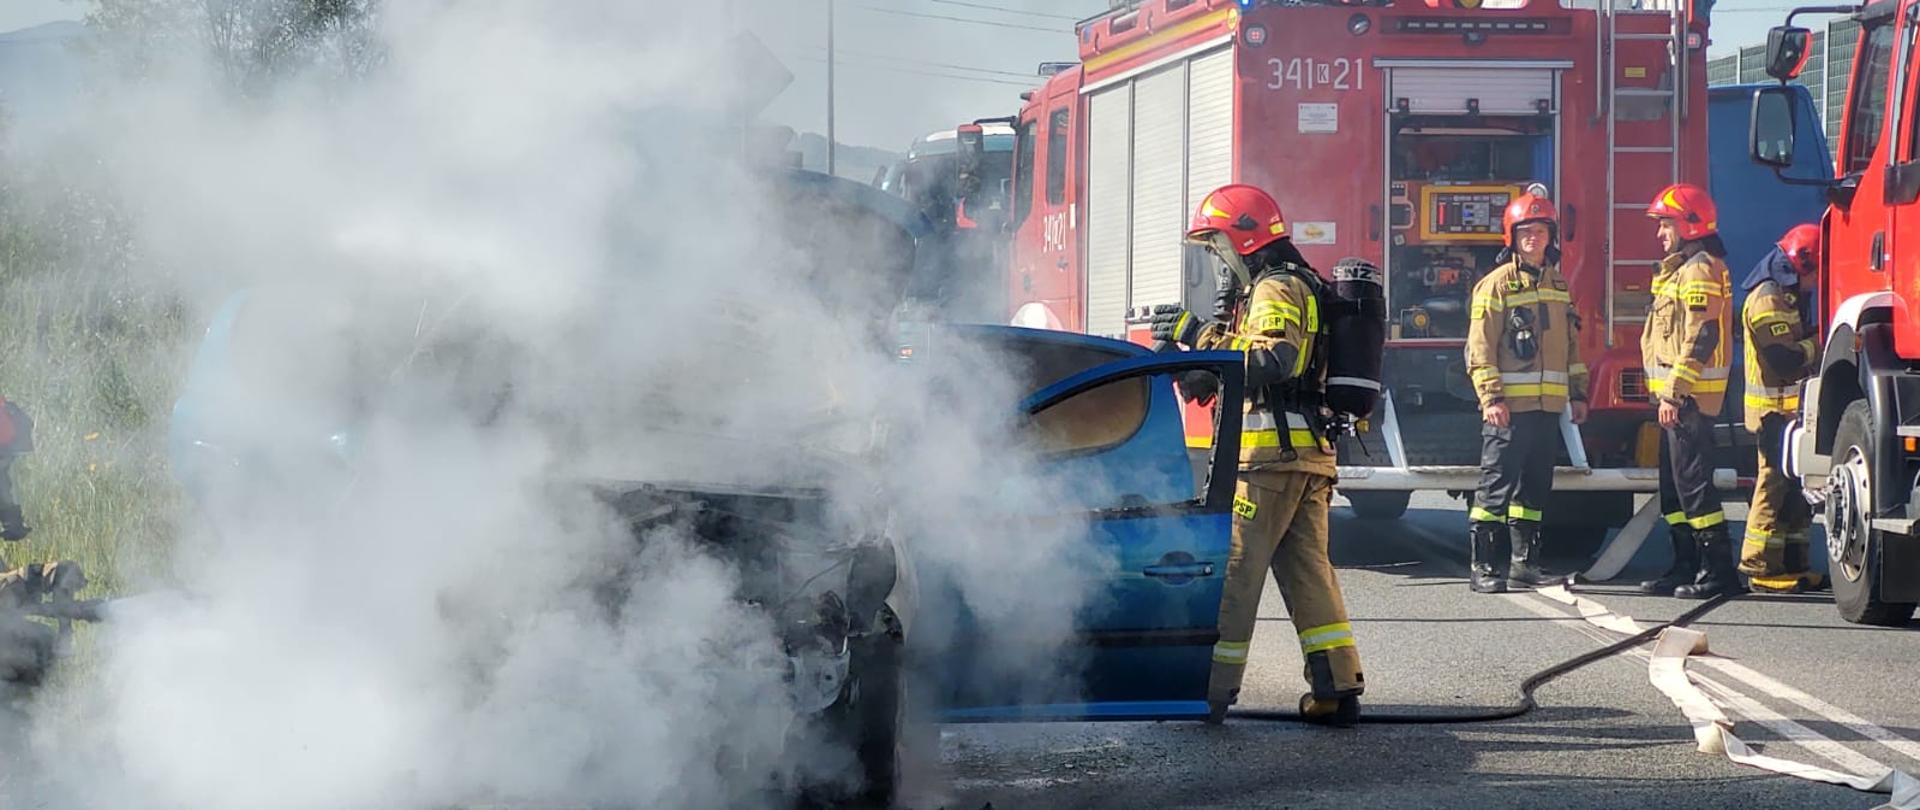 Strażacy gaszą pożar samochodu osobowego, z którego wydobywa się dym.